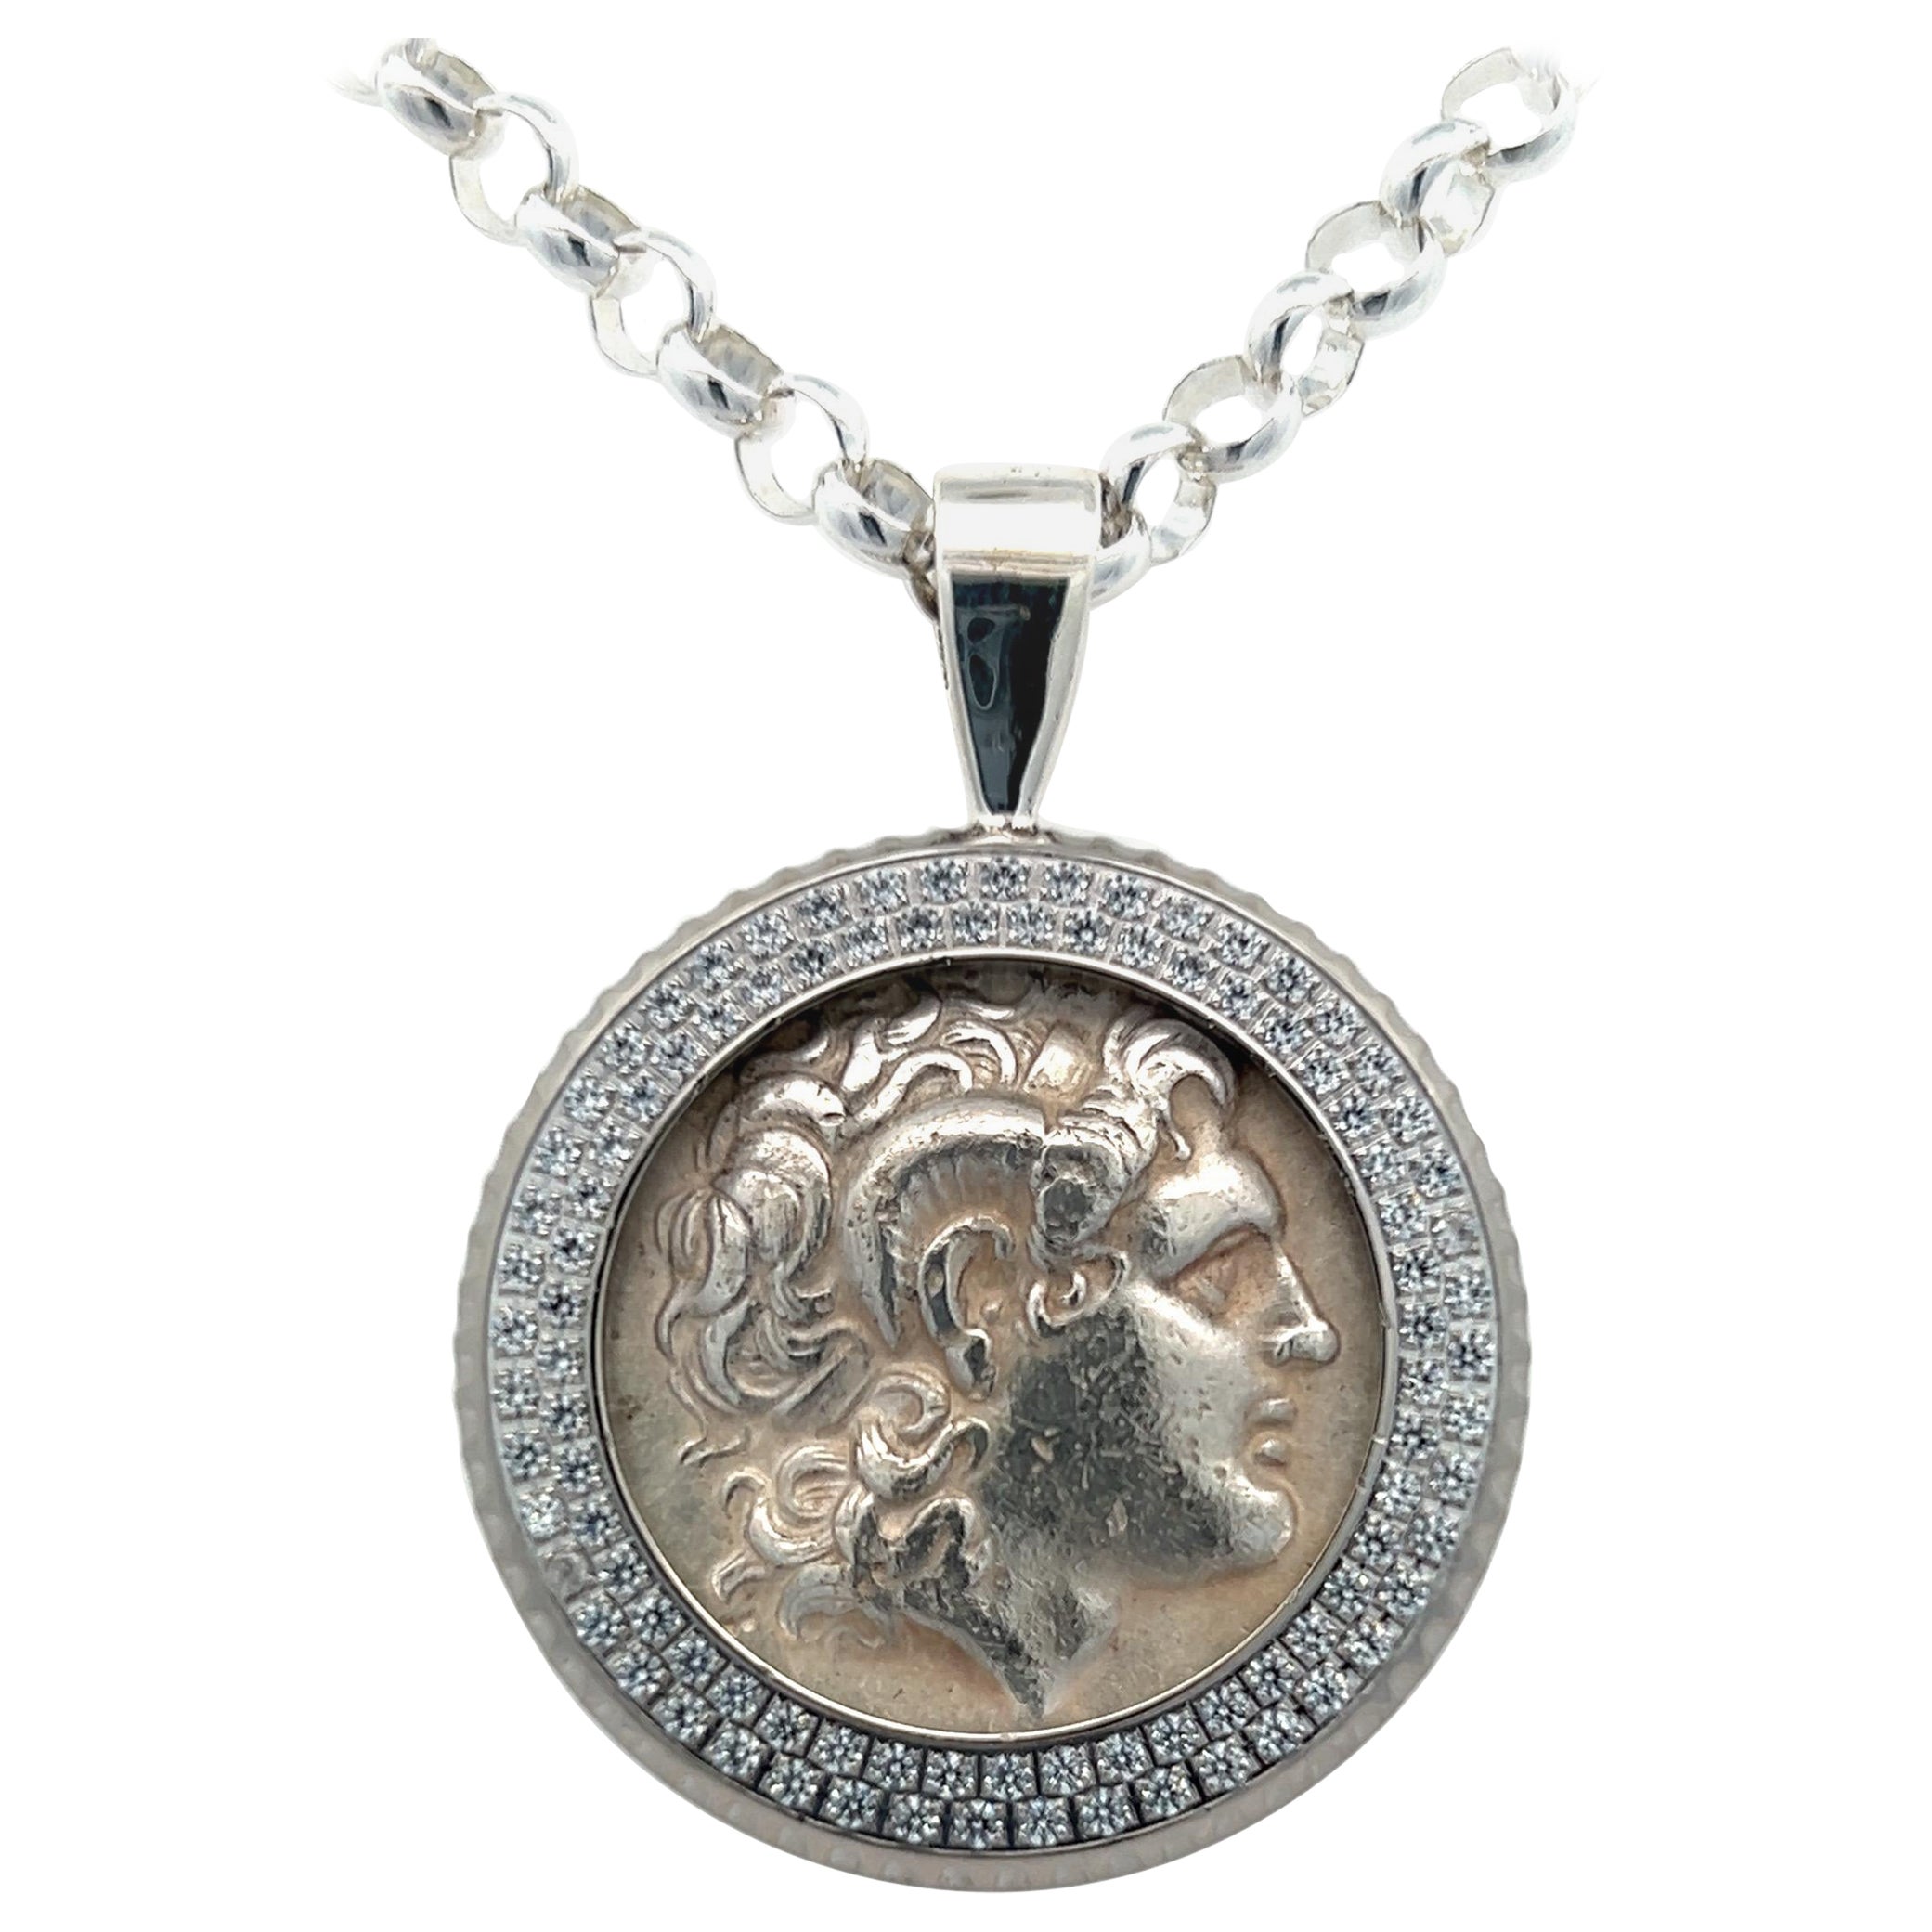 ALexander The Great Coin Chain pendentif authentique Tetradrachm en argent de la Grèce antique